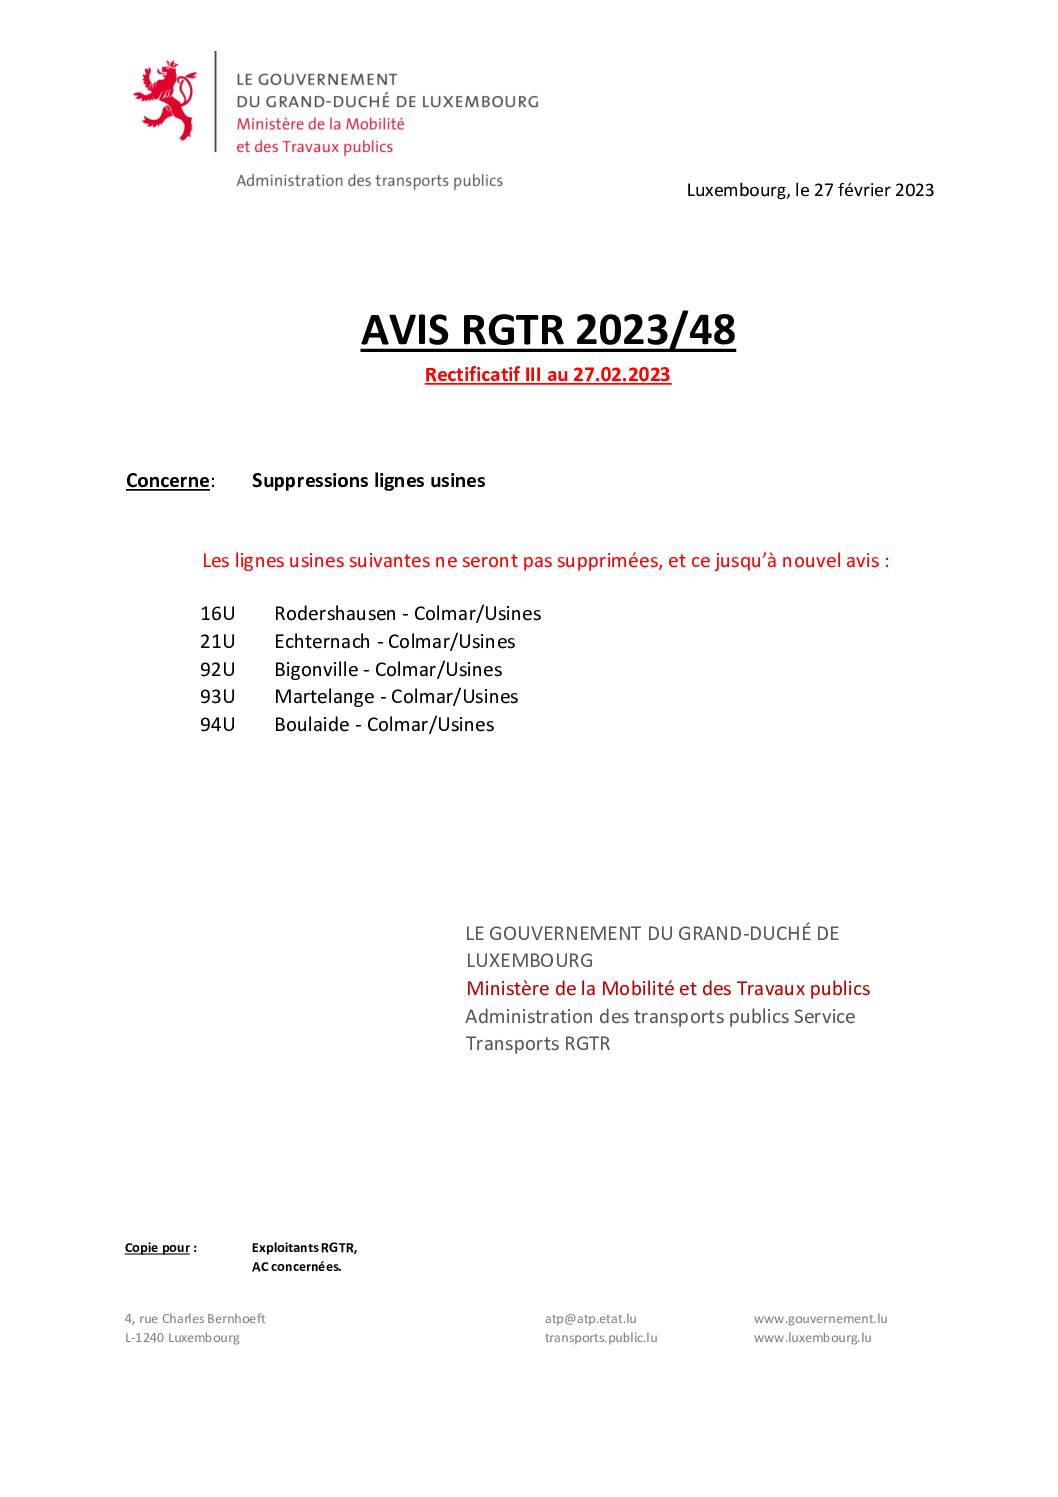 AVIS RGTR 2023/48